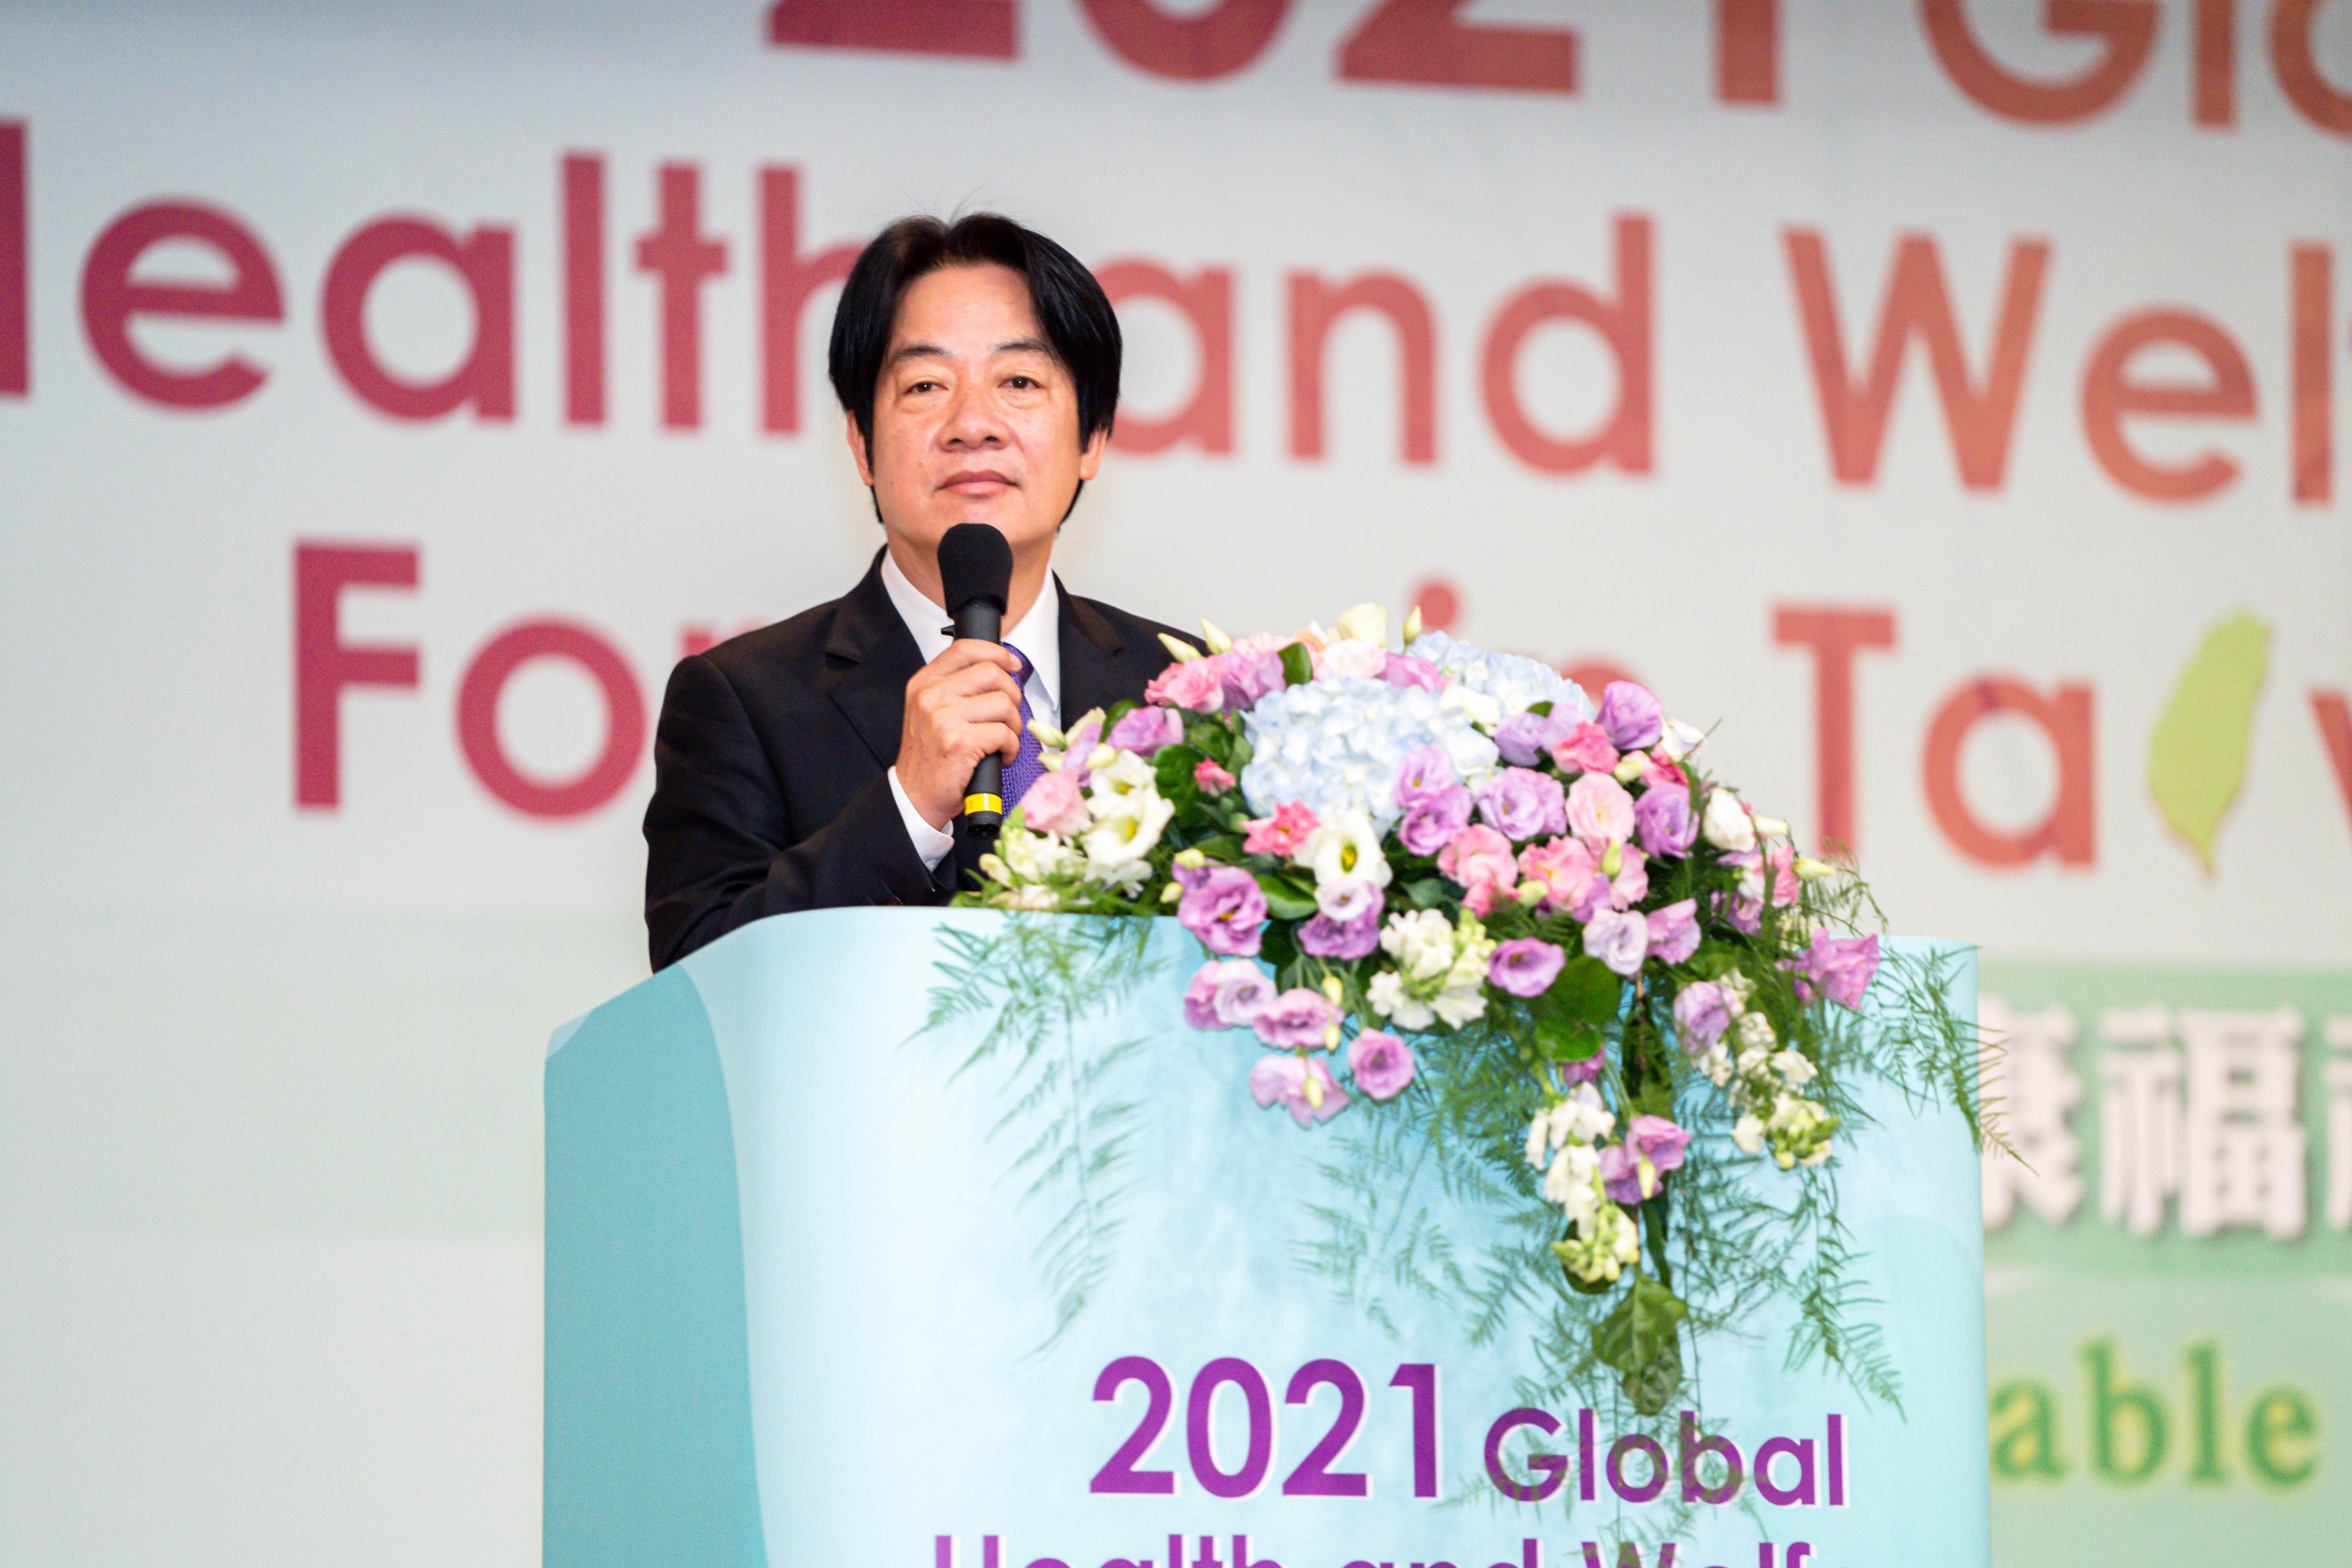 2021臺灣全球健康福祉論壇